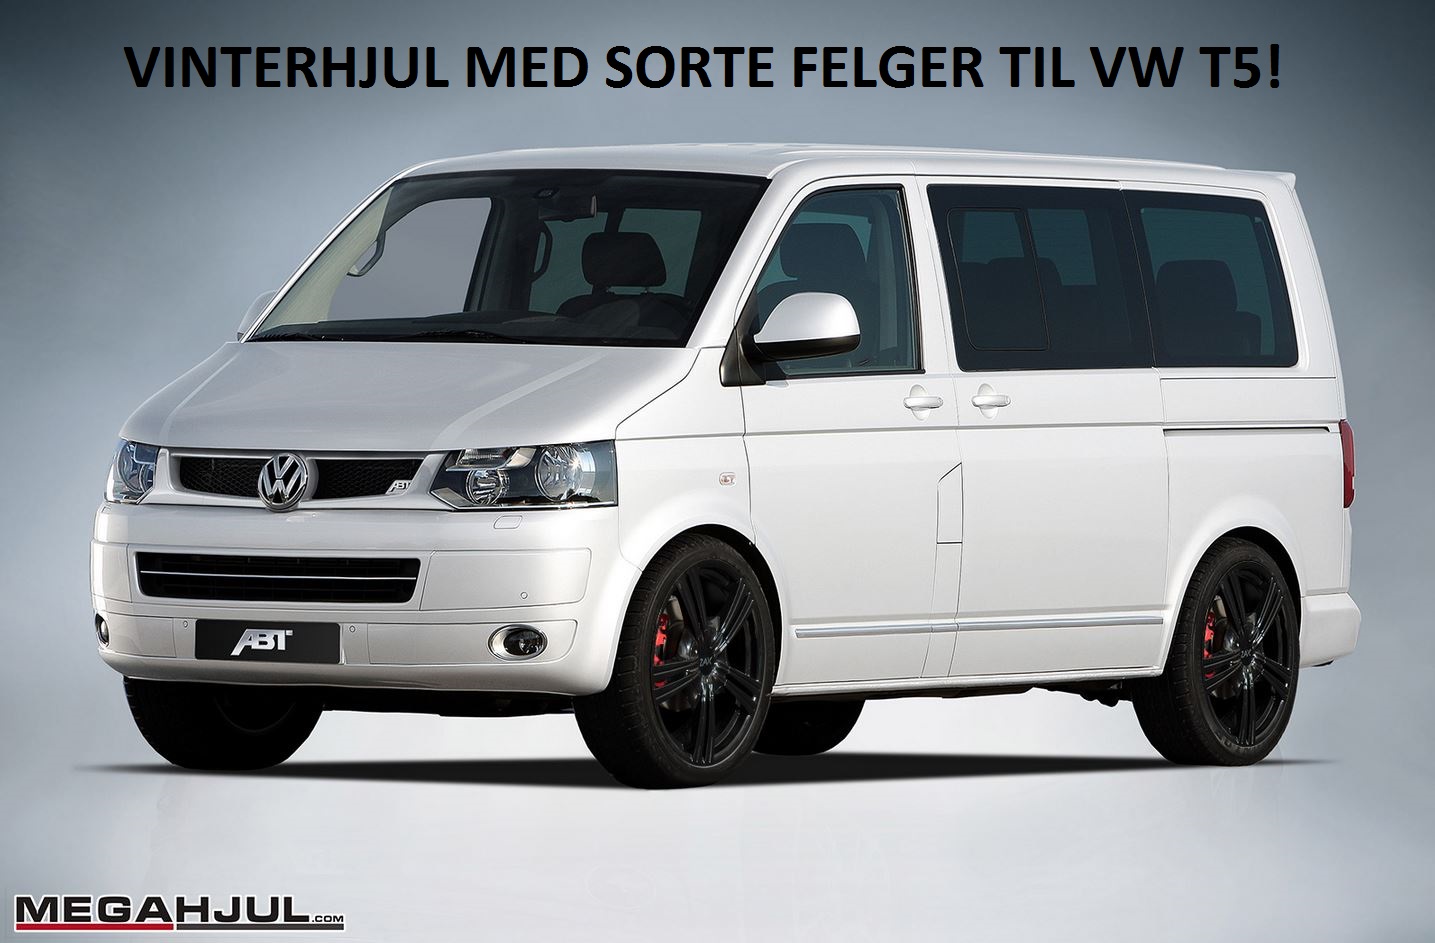 vinterhjul-med-sorte-felger-til-volkswagen-t5